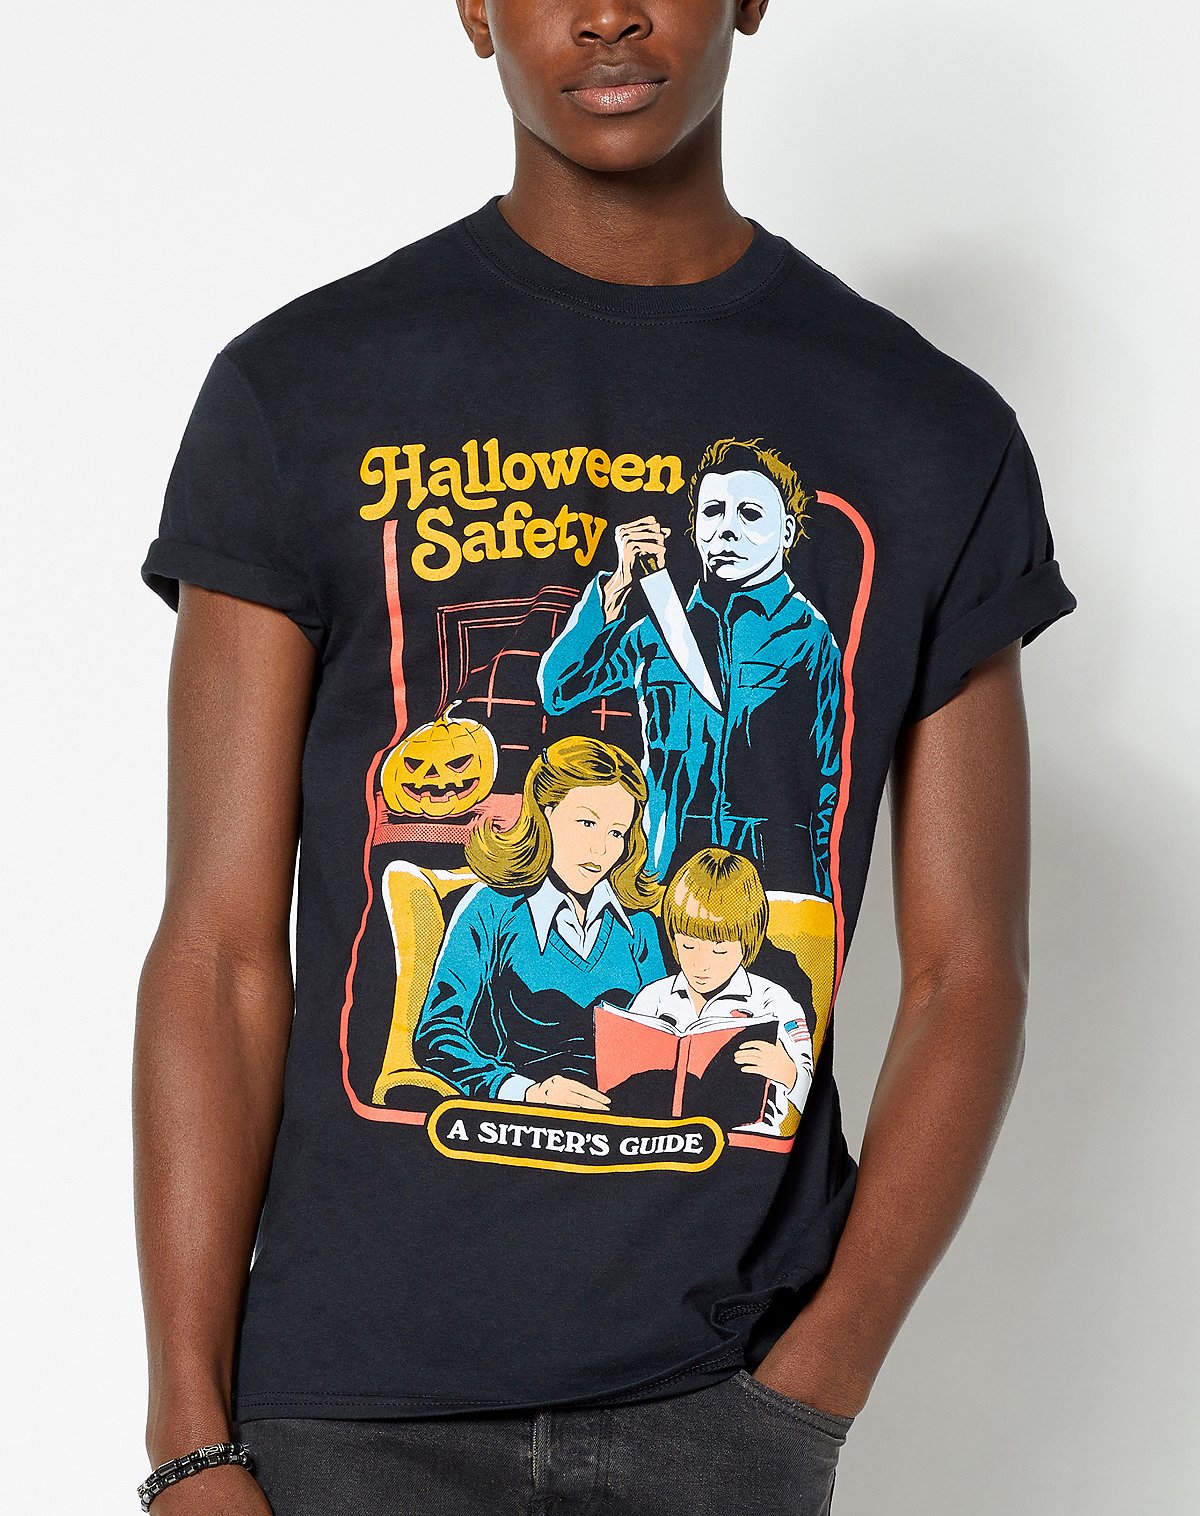 steven rhodes halloween safety t shirt